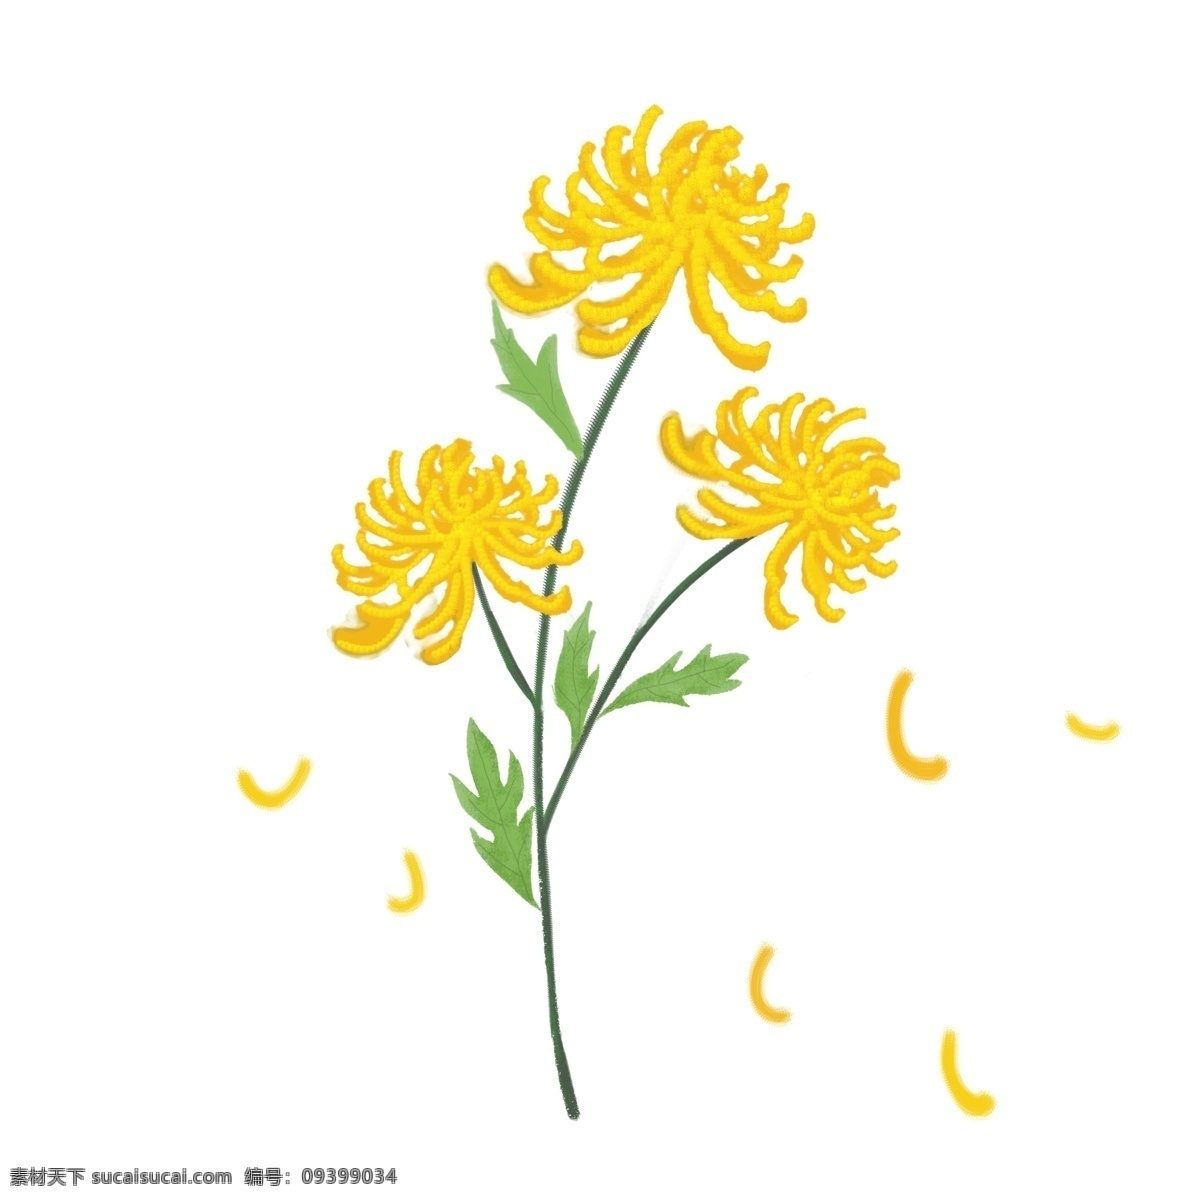 手绘 重阳节 黄色 雏 菊 菊花 绿叶 金黄色 节日元素